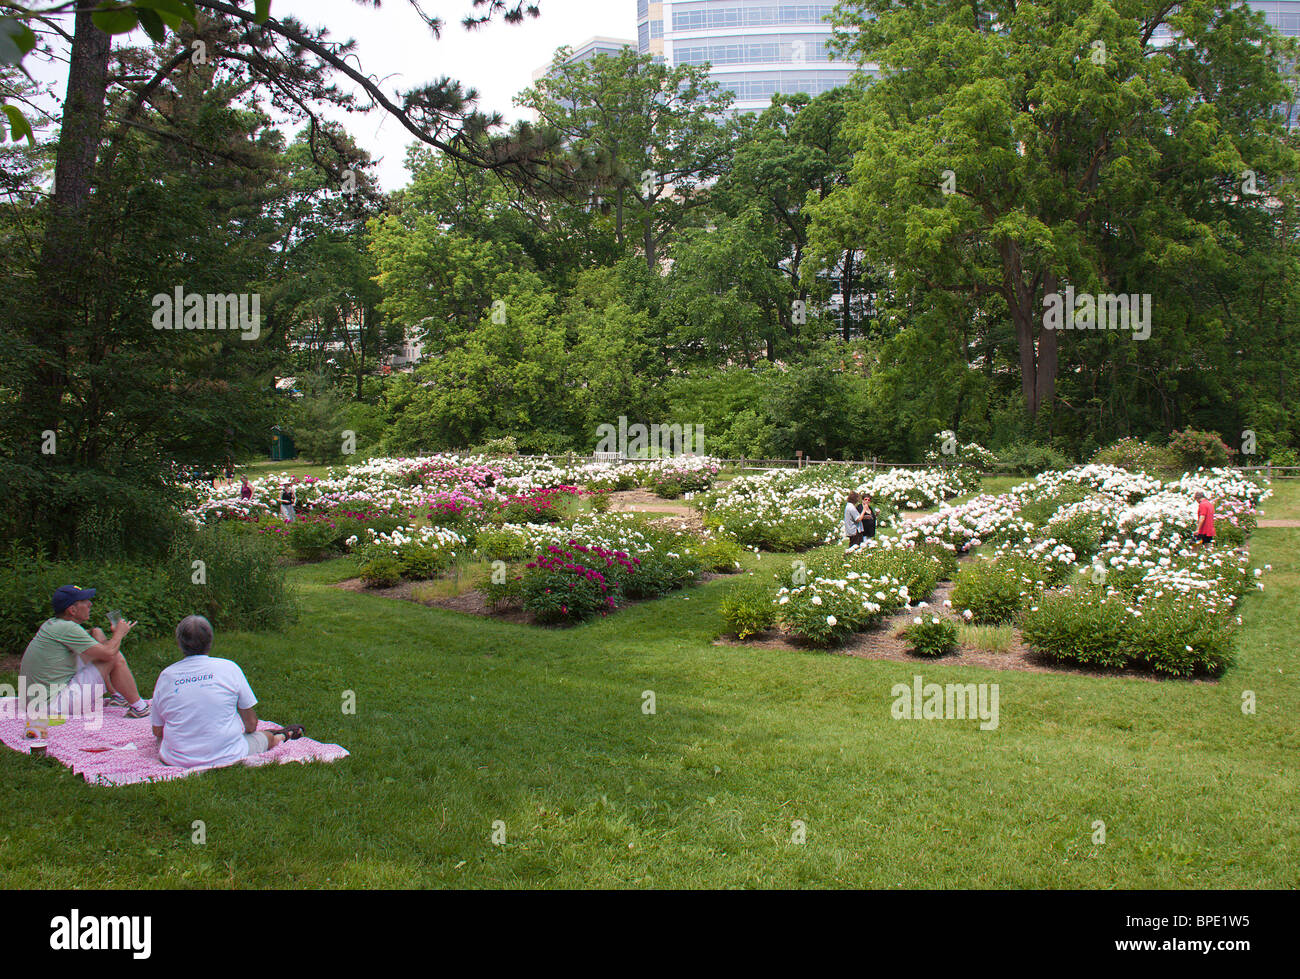 Peonies in bloom, University of Michigan arboretum, Ann Arbor, Michigan Stock Photo